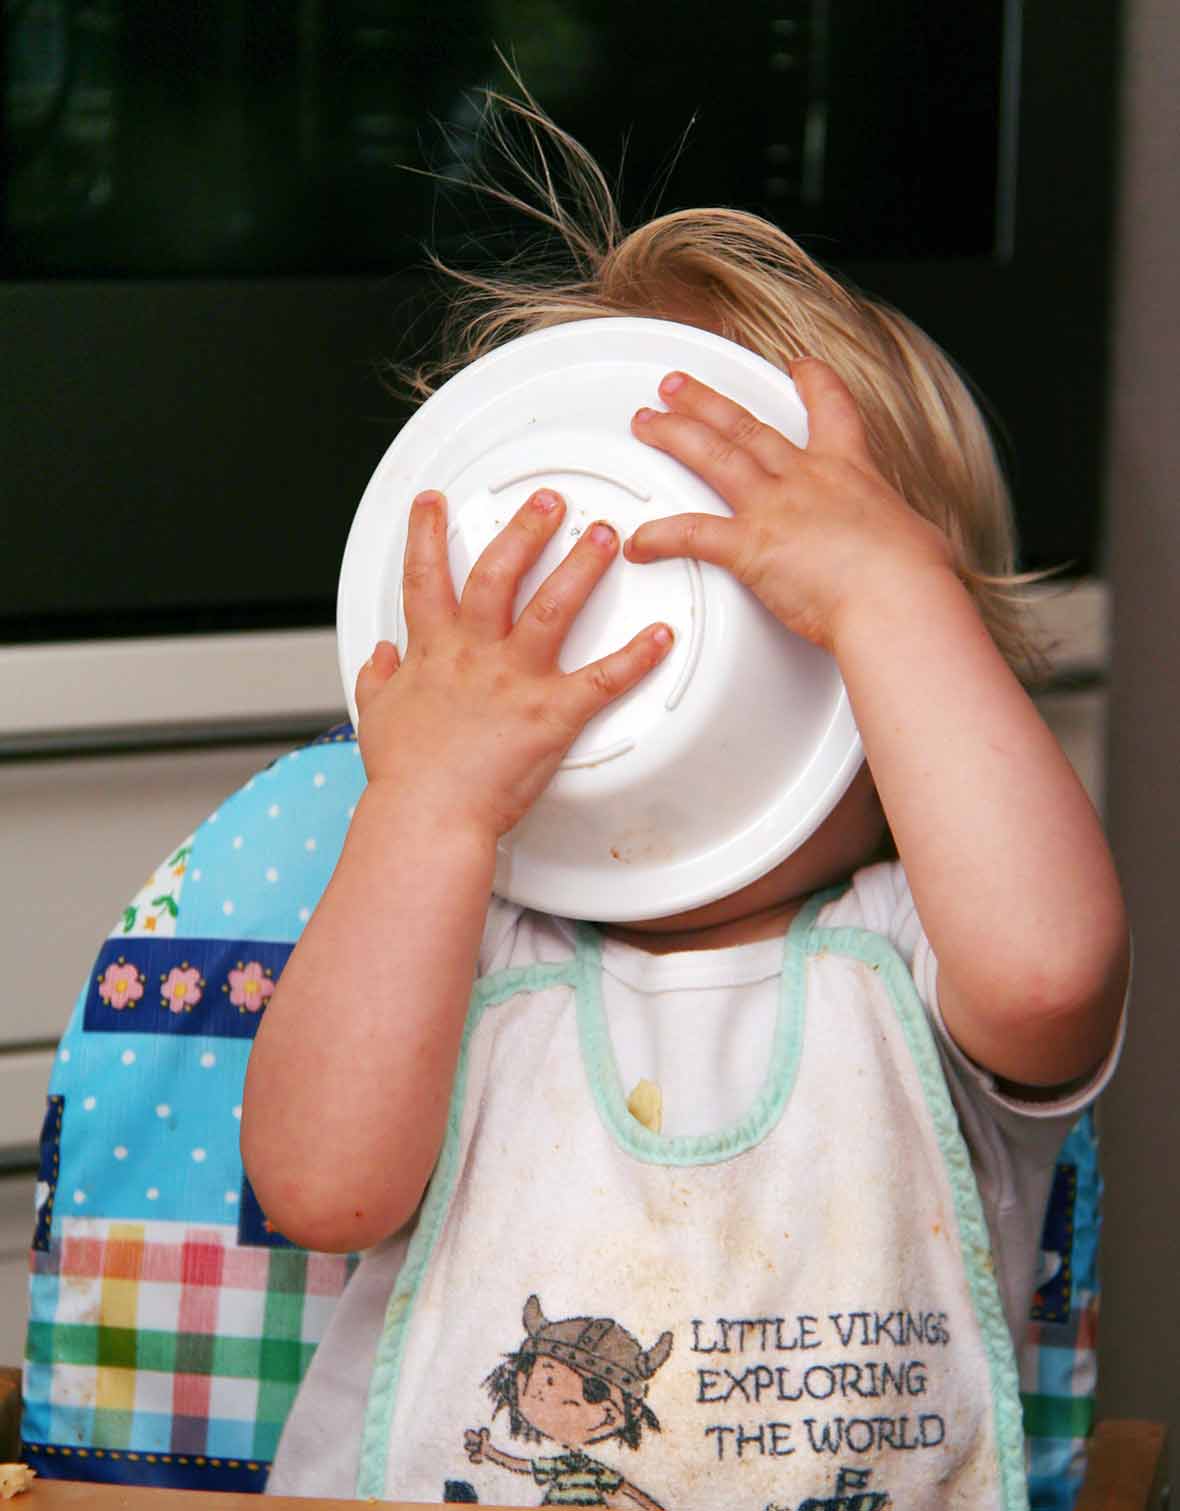 A kid in a high chair licking a bowl clean